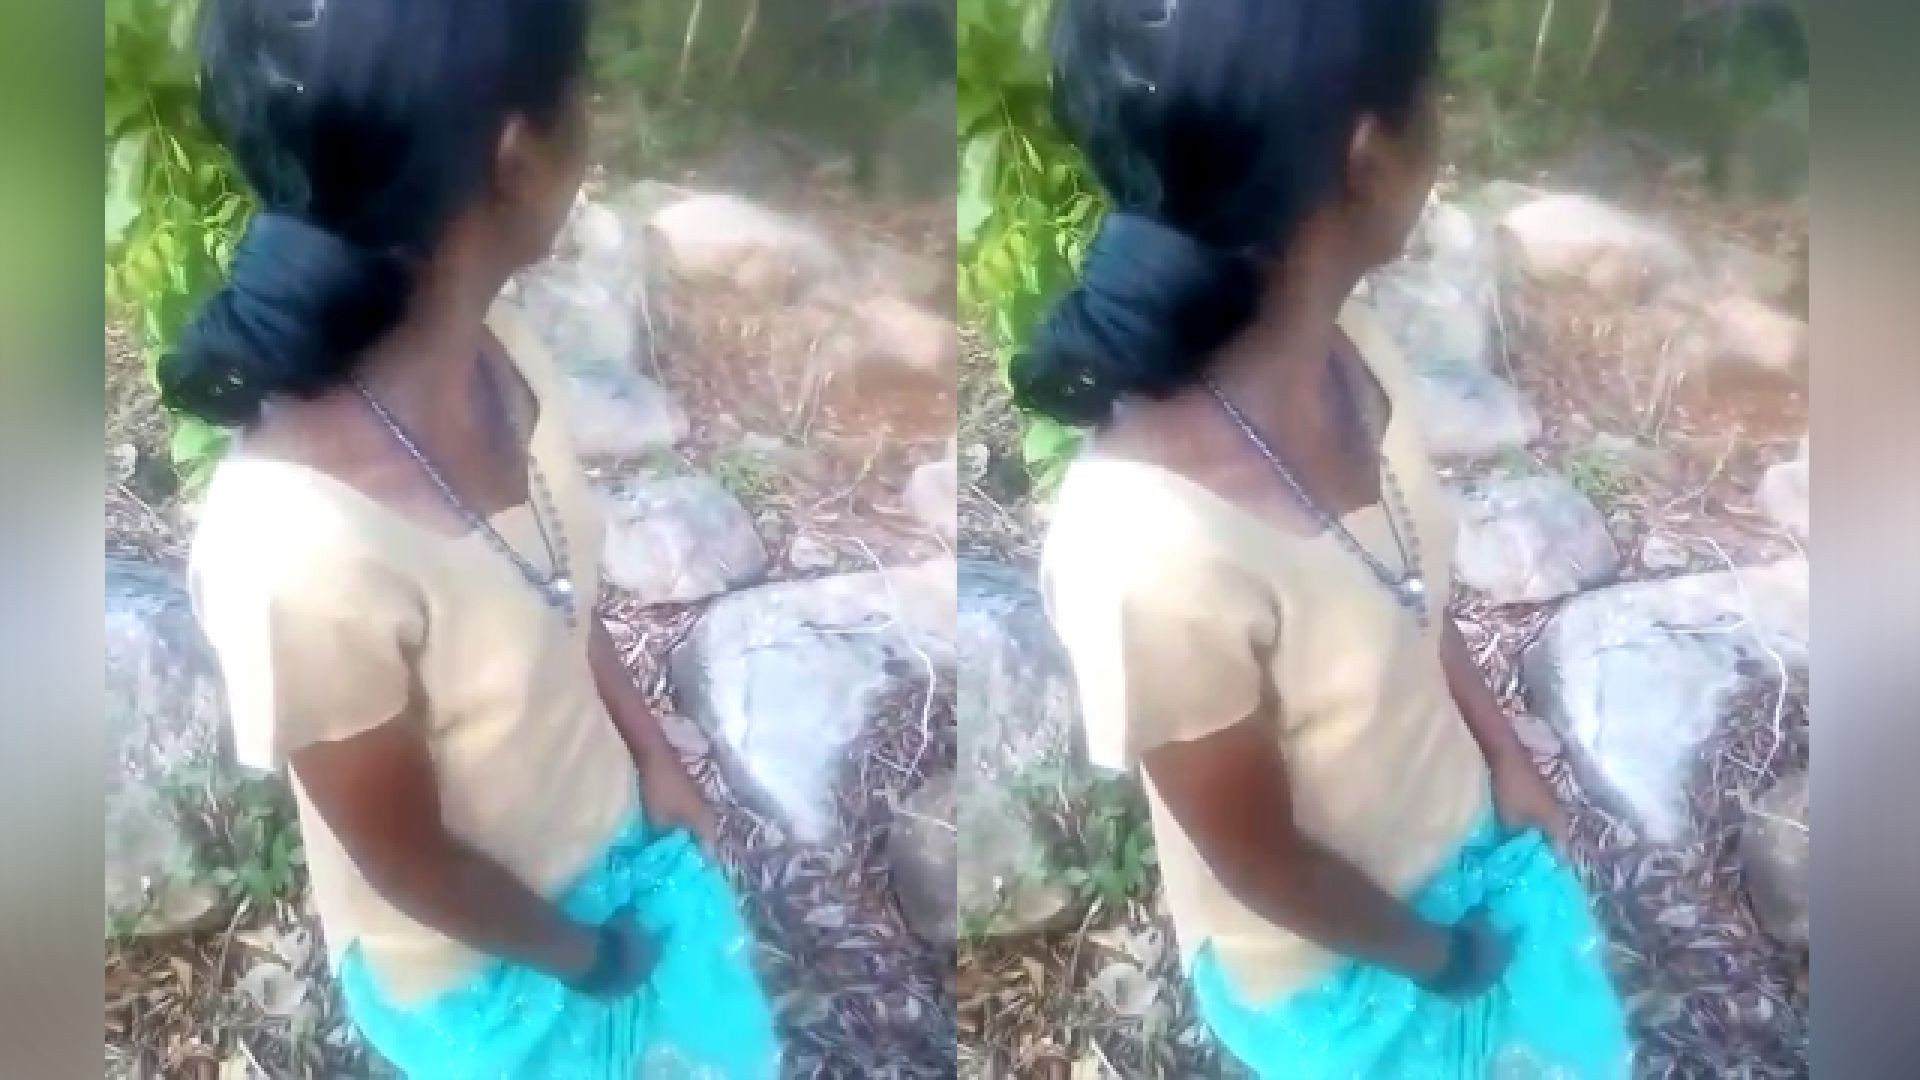 Tamil teen sex videos